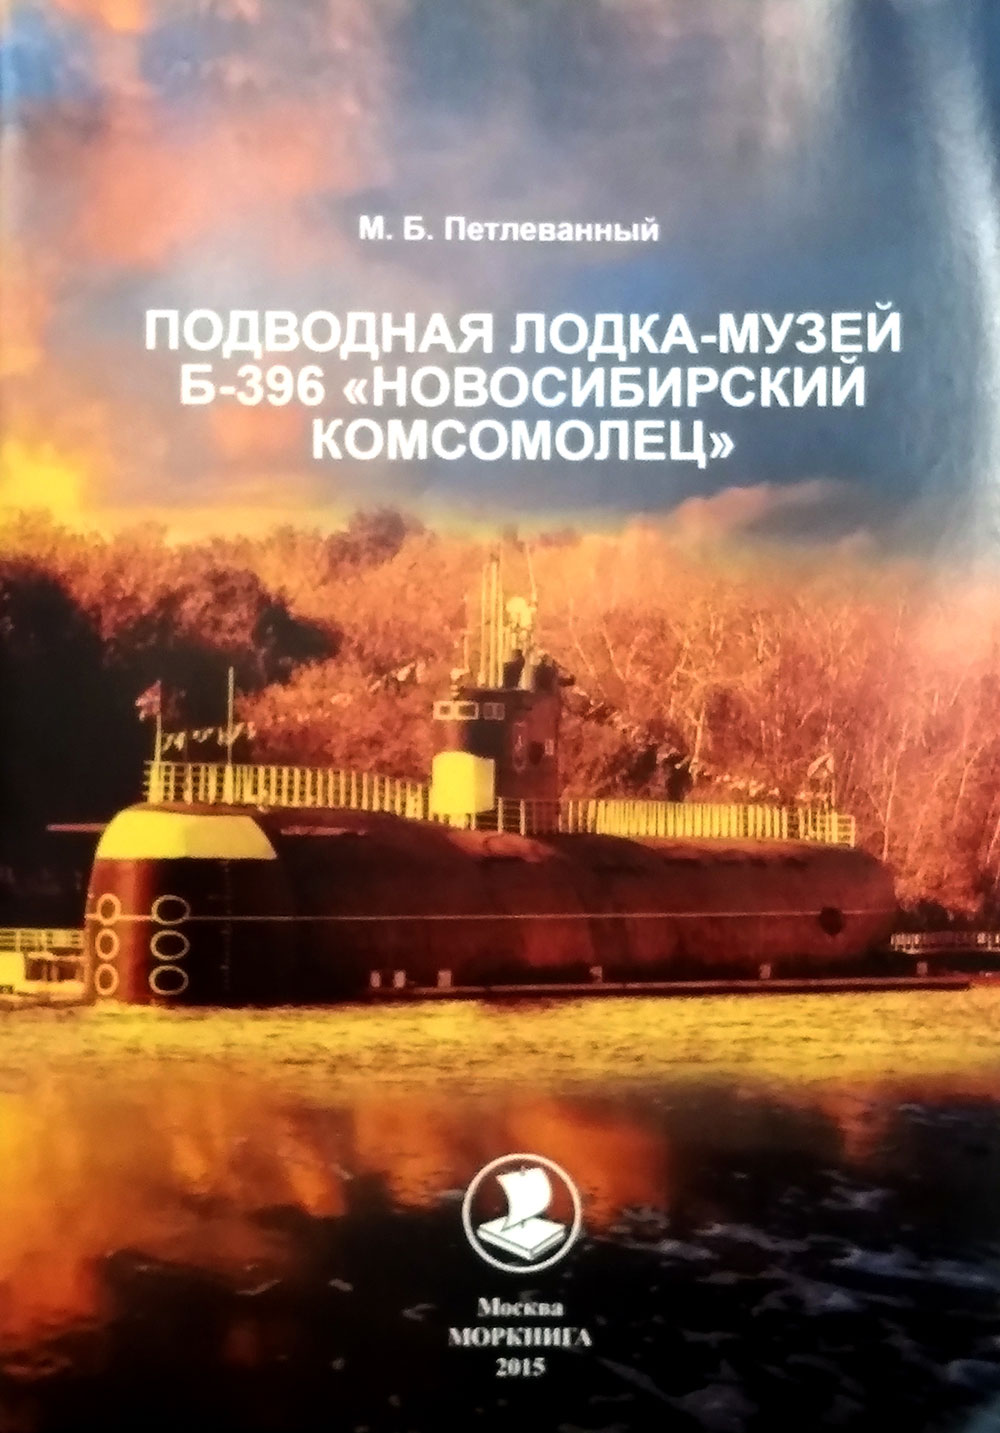 Подводная лодка-музей Б-396 "Новосибирский комсомолец"